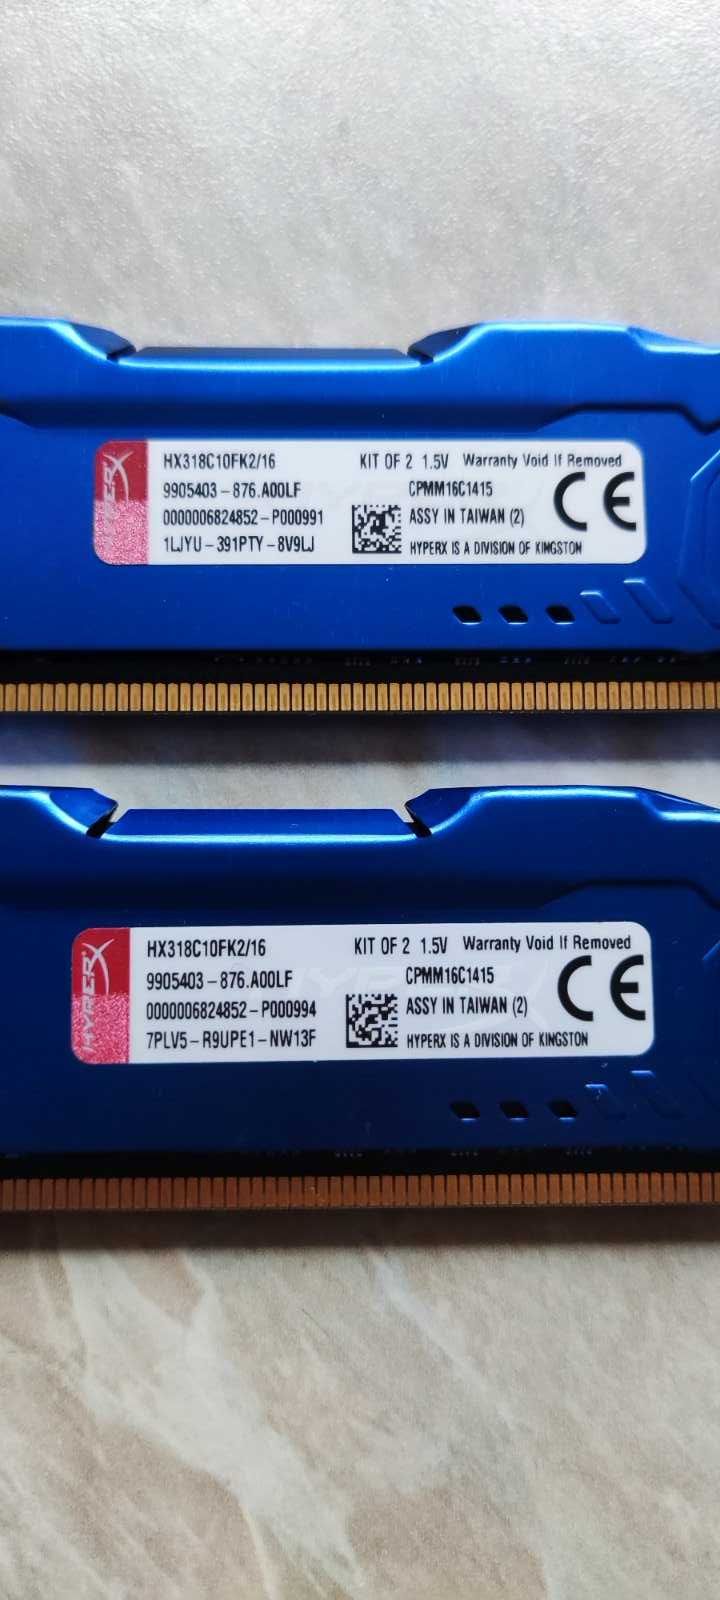 Kingston HyperX Fury DDR3 16Gb 1866Mhz 2x8Gb